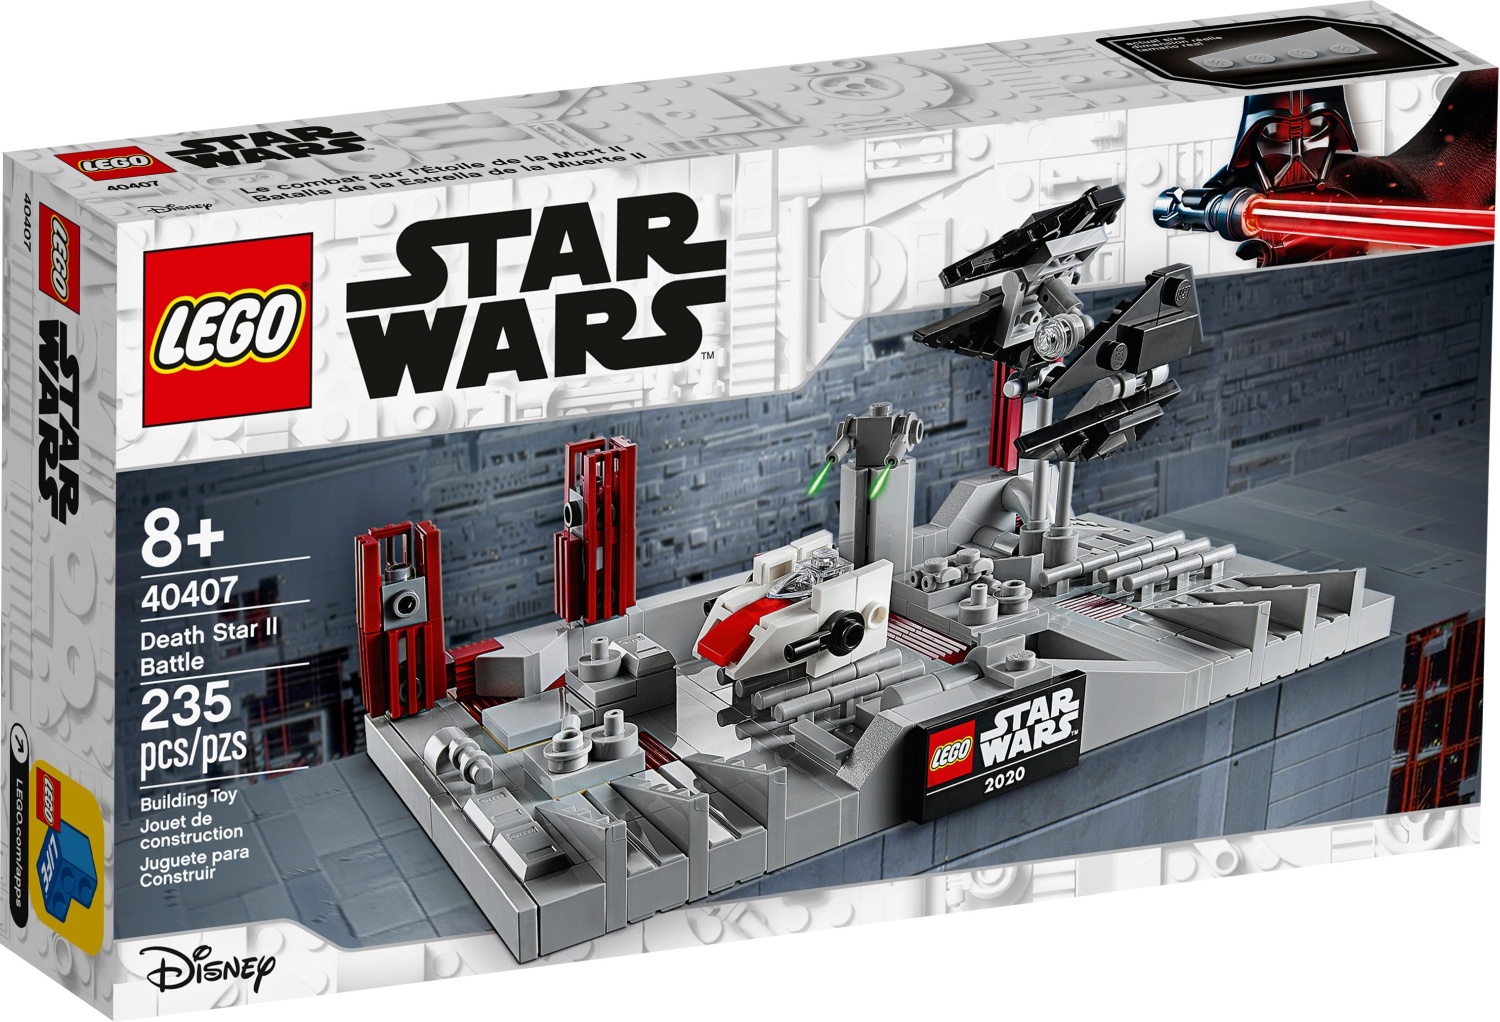 Wees tevreden monteren Nieuwjaar LEGO Star Wars Death Star II Battle (40407) Promo Available Again on LEGO  Shop - The Brick Fan